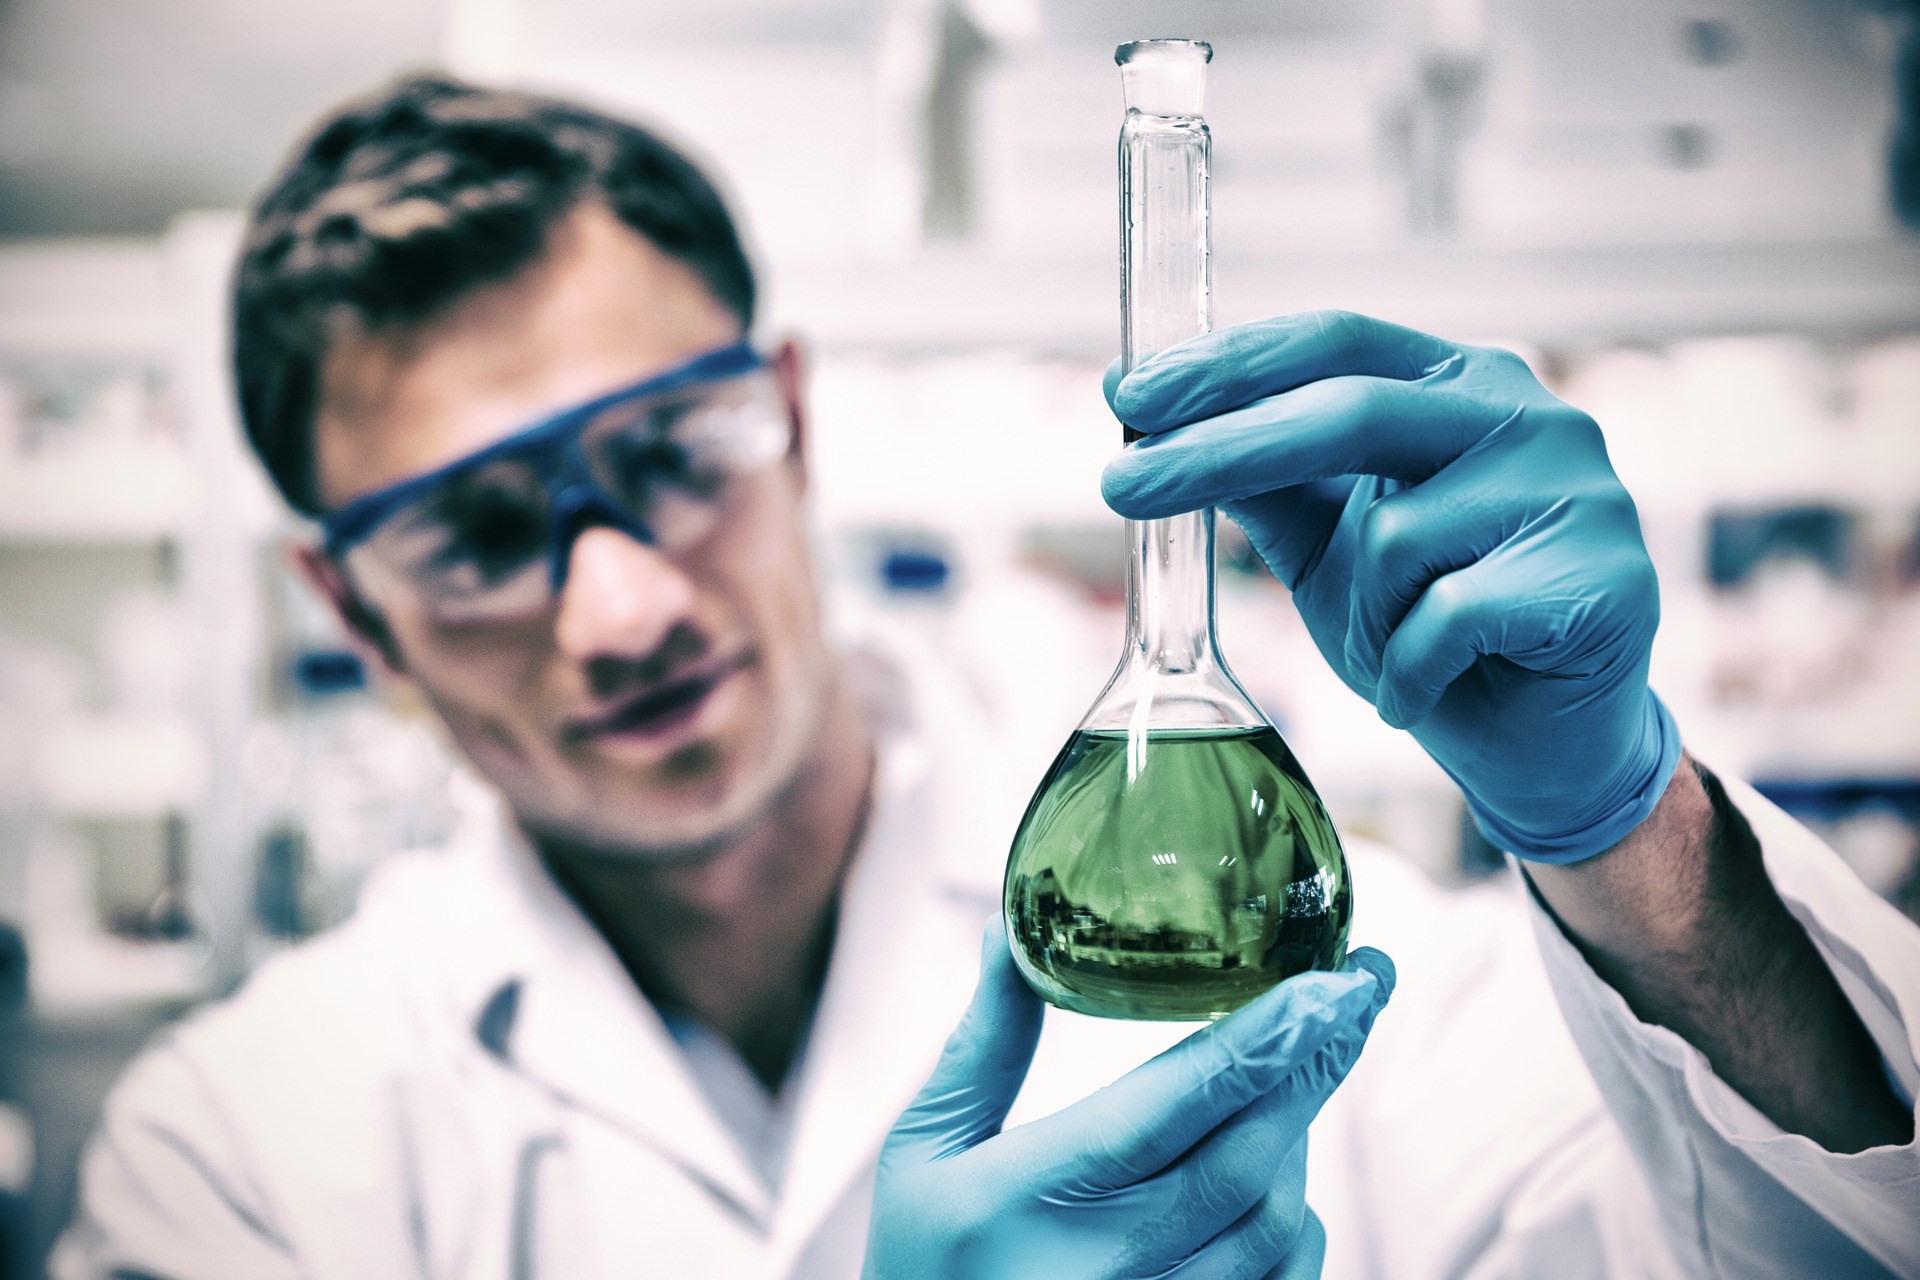 Chemist holding up beaker of green chemical